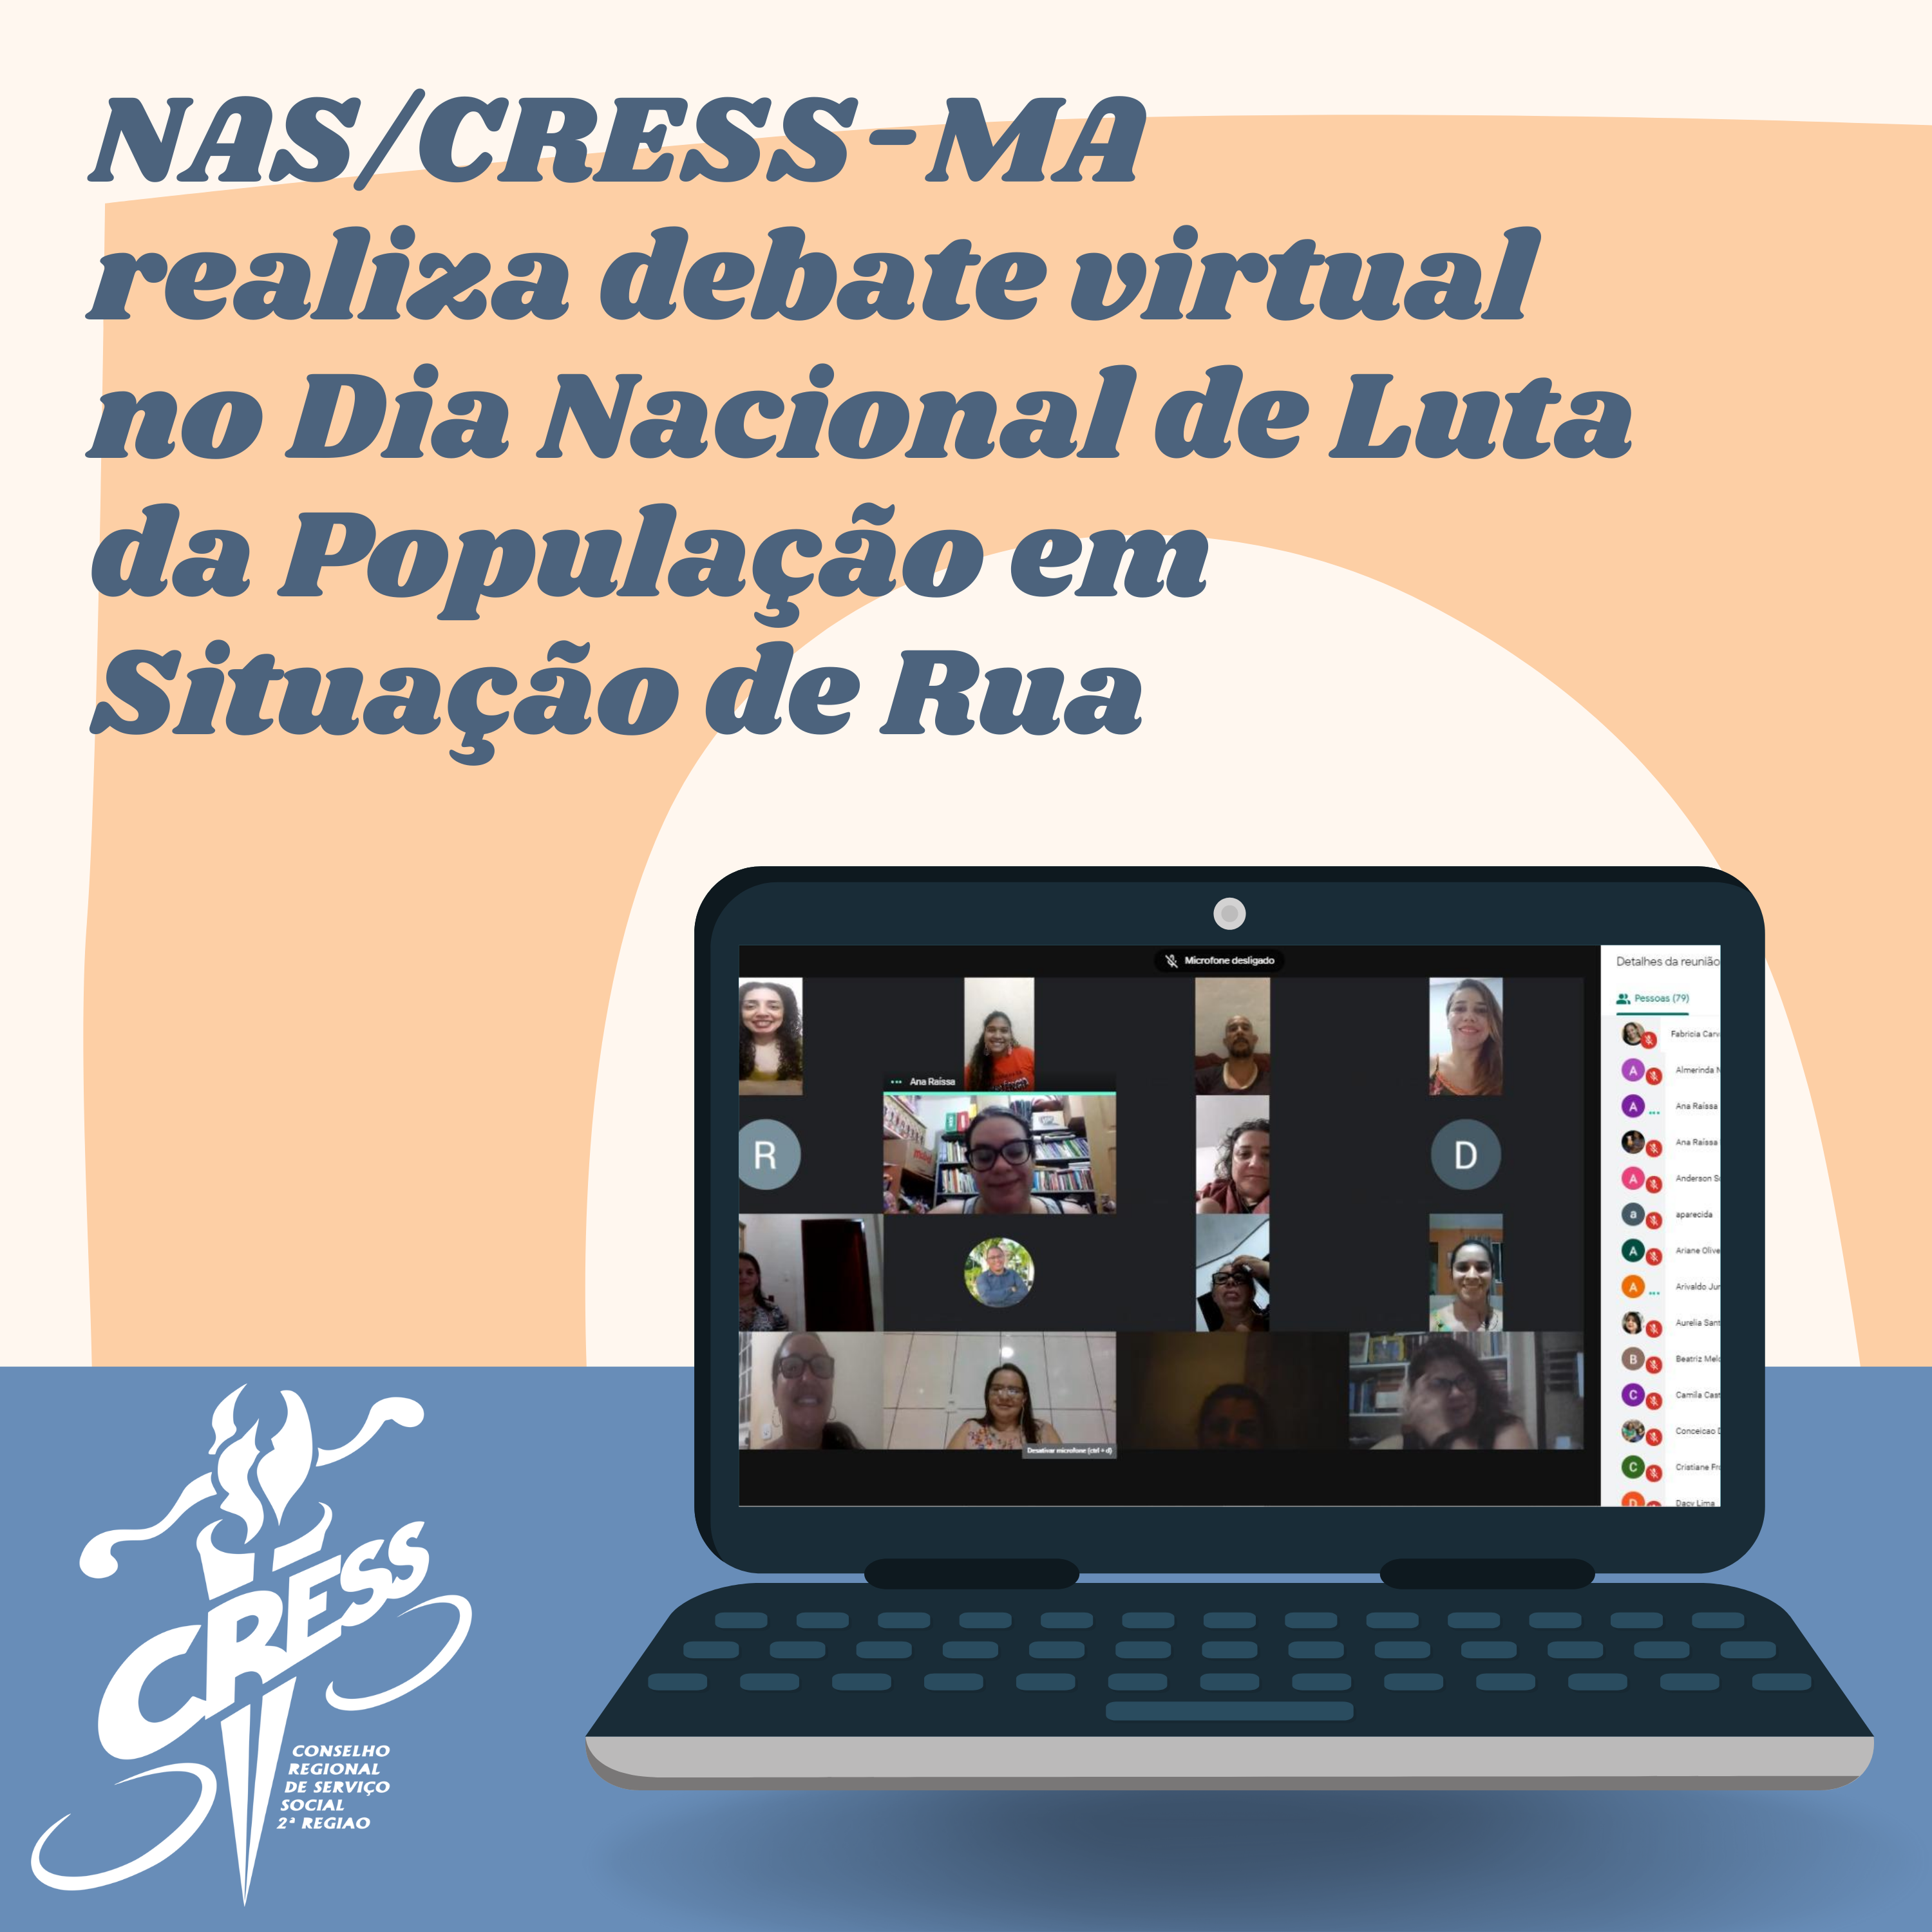 NAS_CRESS-MA realiza debate virtual no Dia Nacional de Luta da População em Situação de Rua